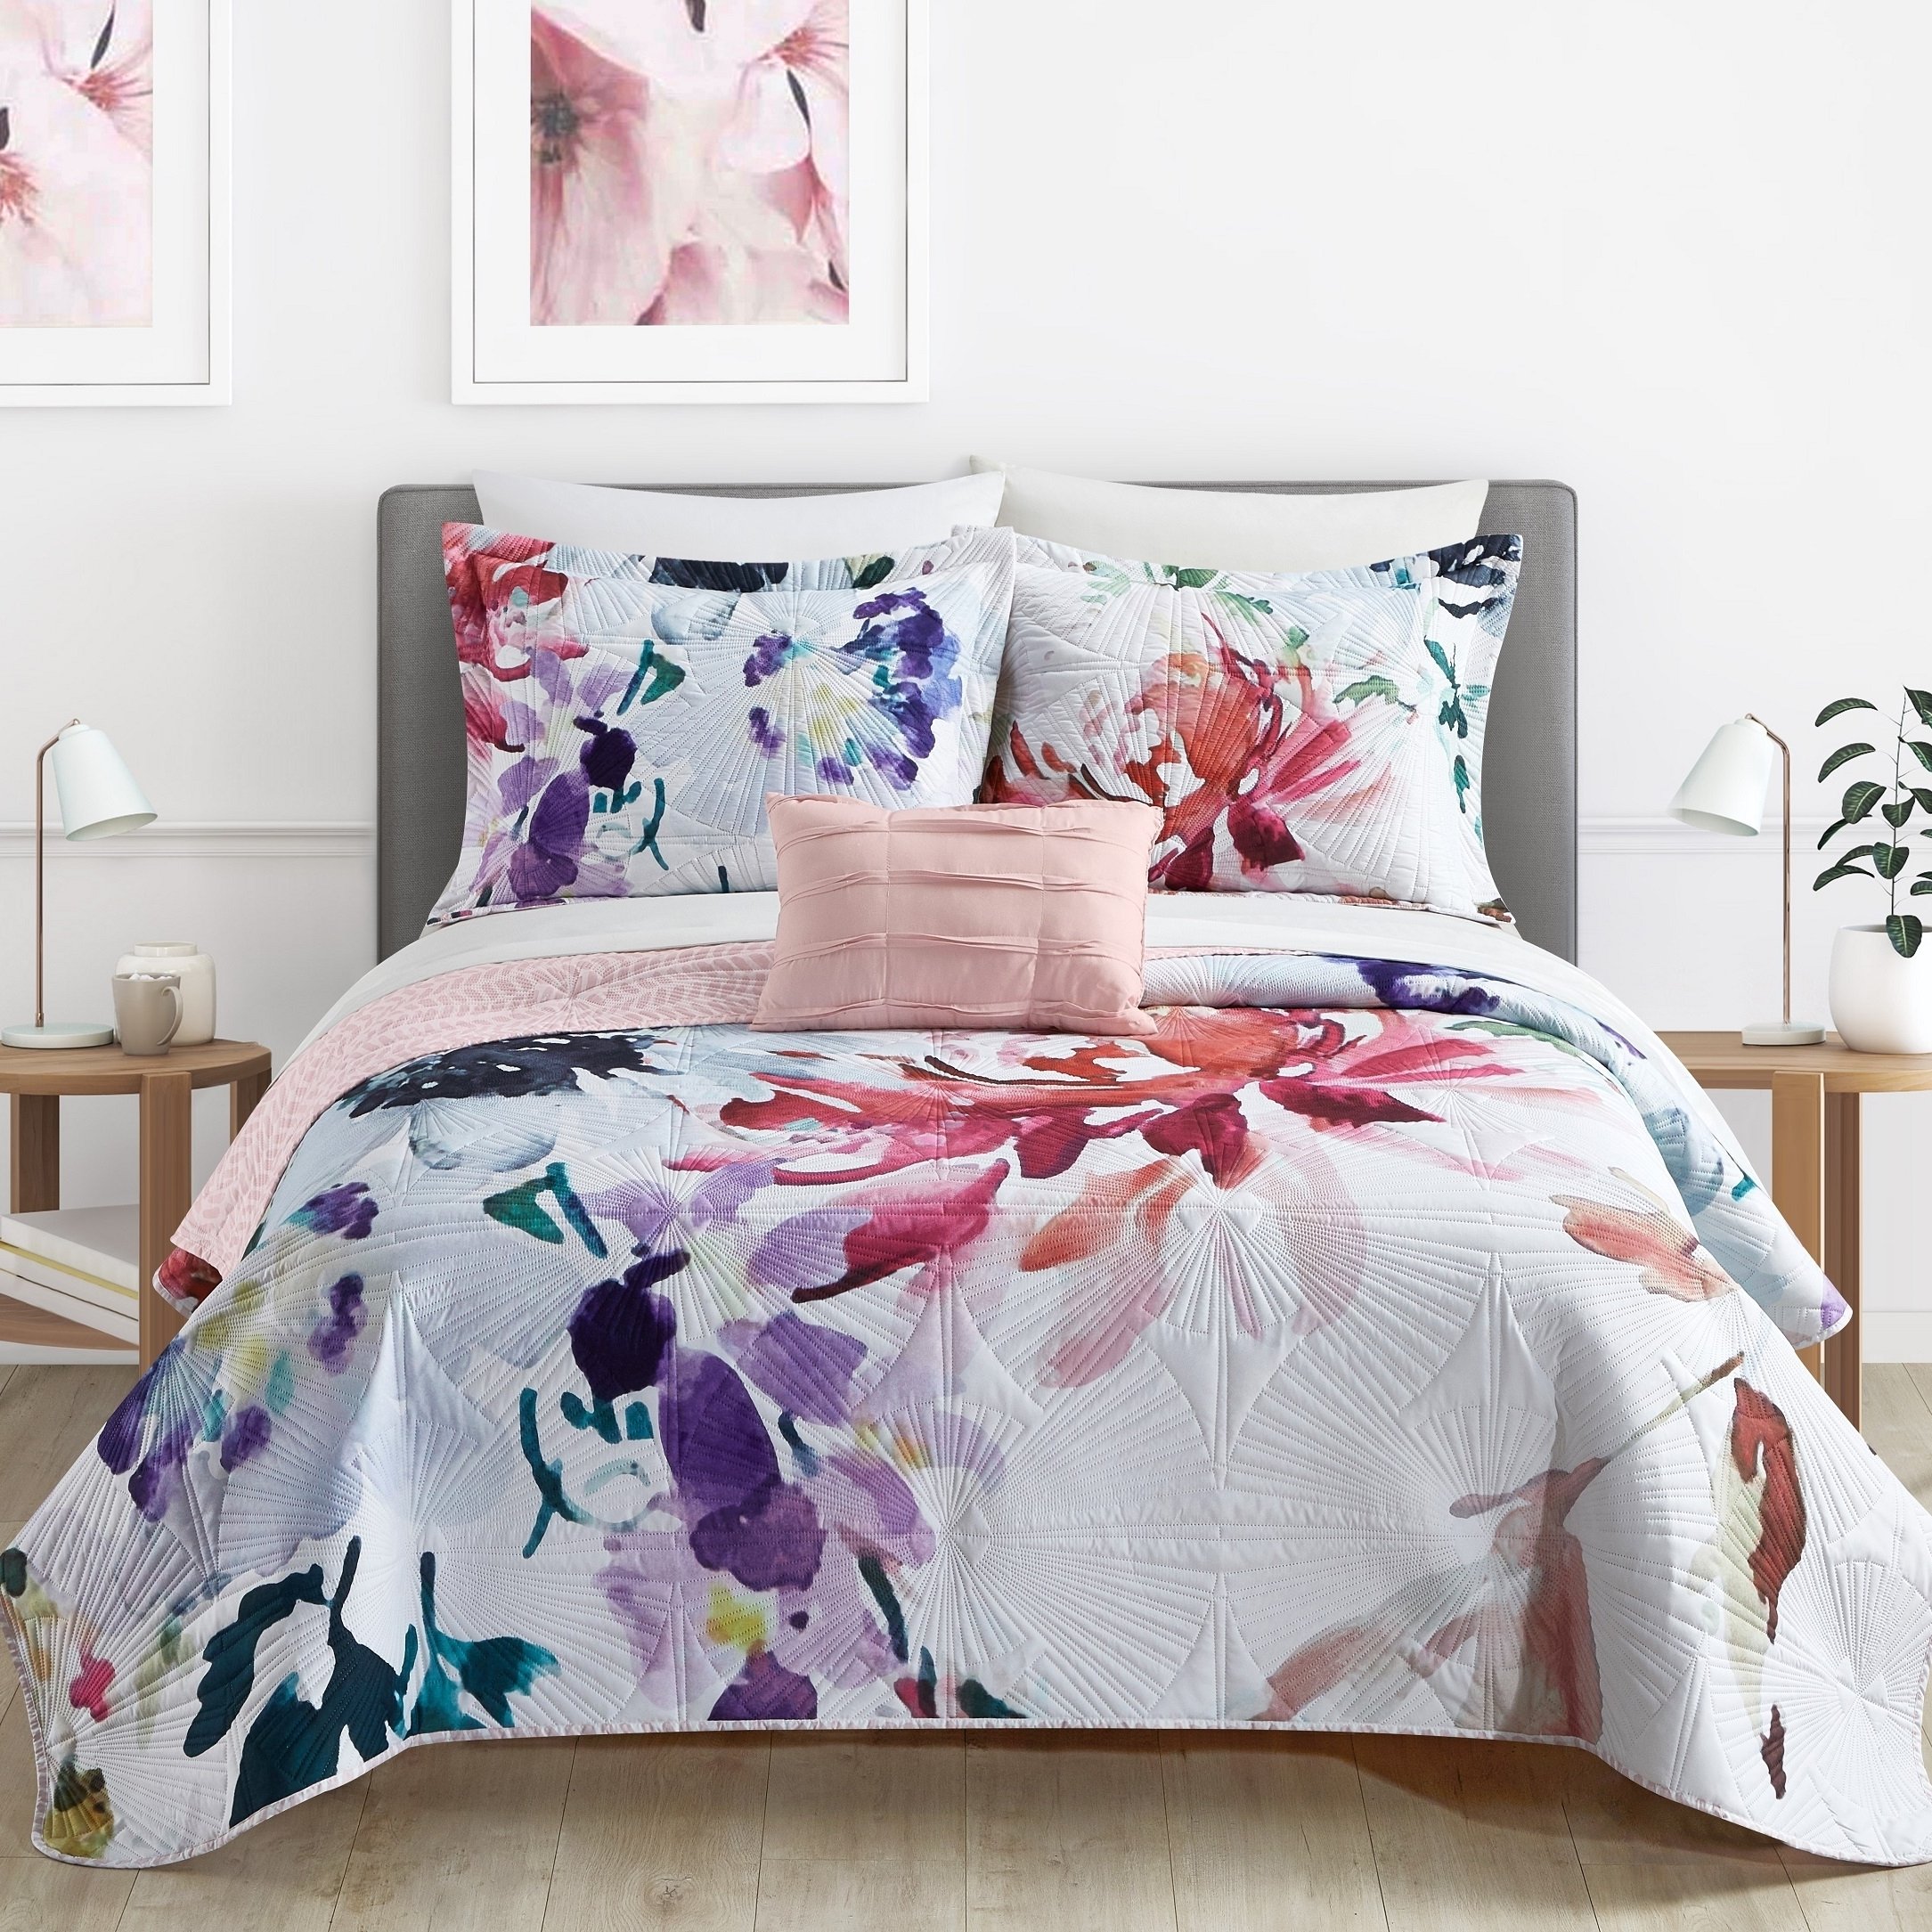 Ateus Palace 3 Or 4Piece Reversible Quilt Set Floral Watercolor Design Bedding - Mateus Purple, King (4 Piece)